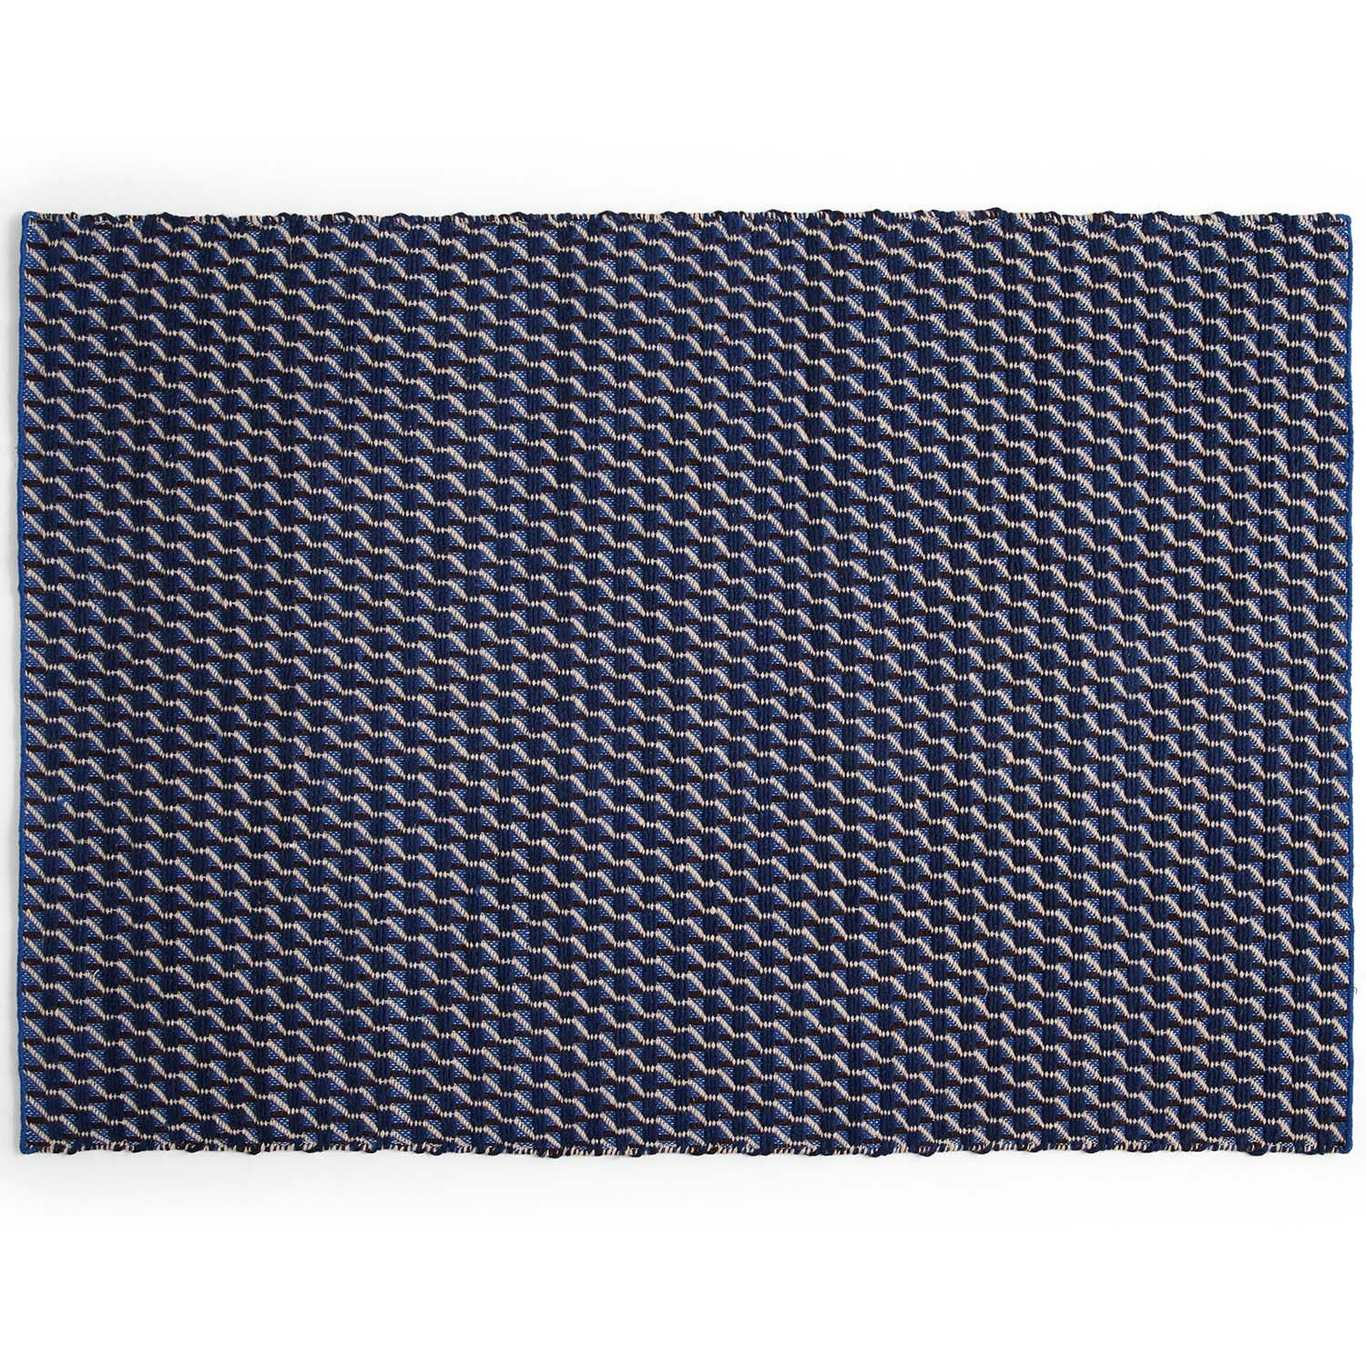 Channel Teppich Blau/Weiß, 60x200 cm